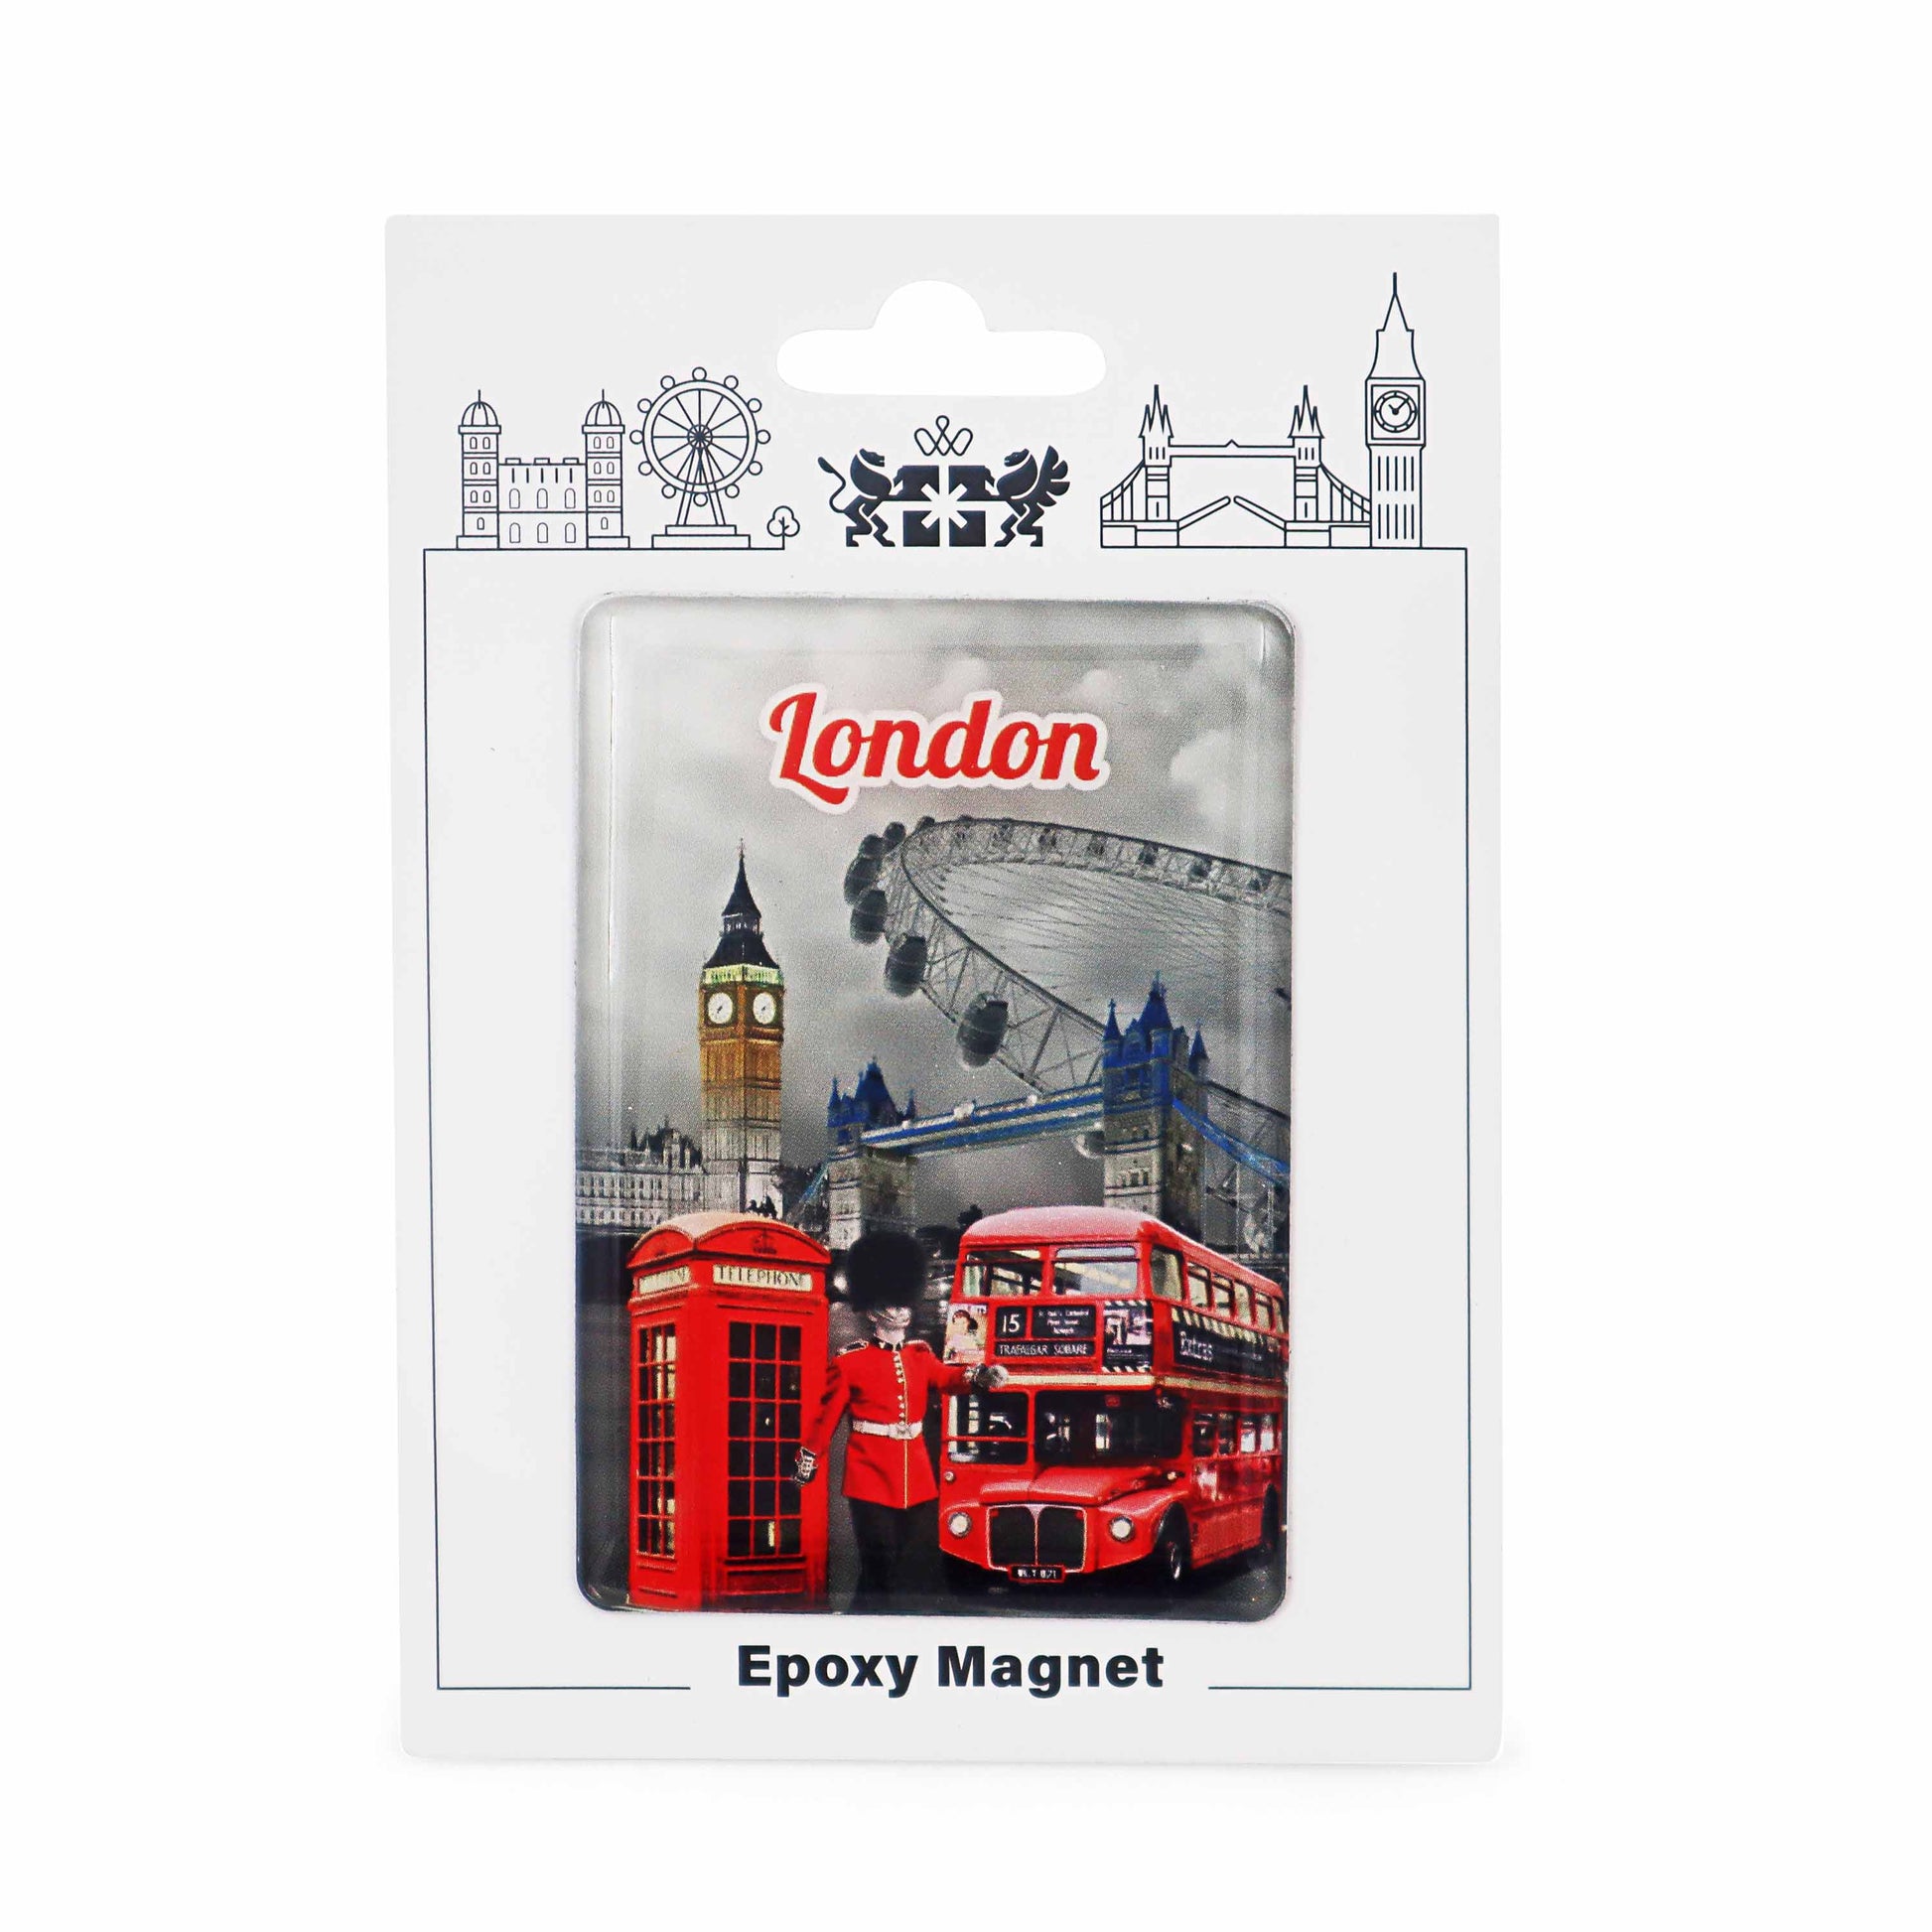 London Souvenir Epoxy Magnet - Design 22 - British Souvenirs